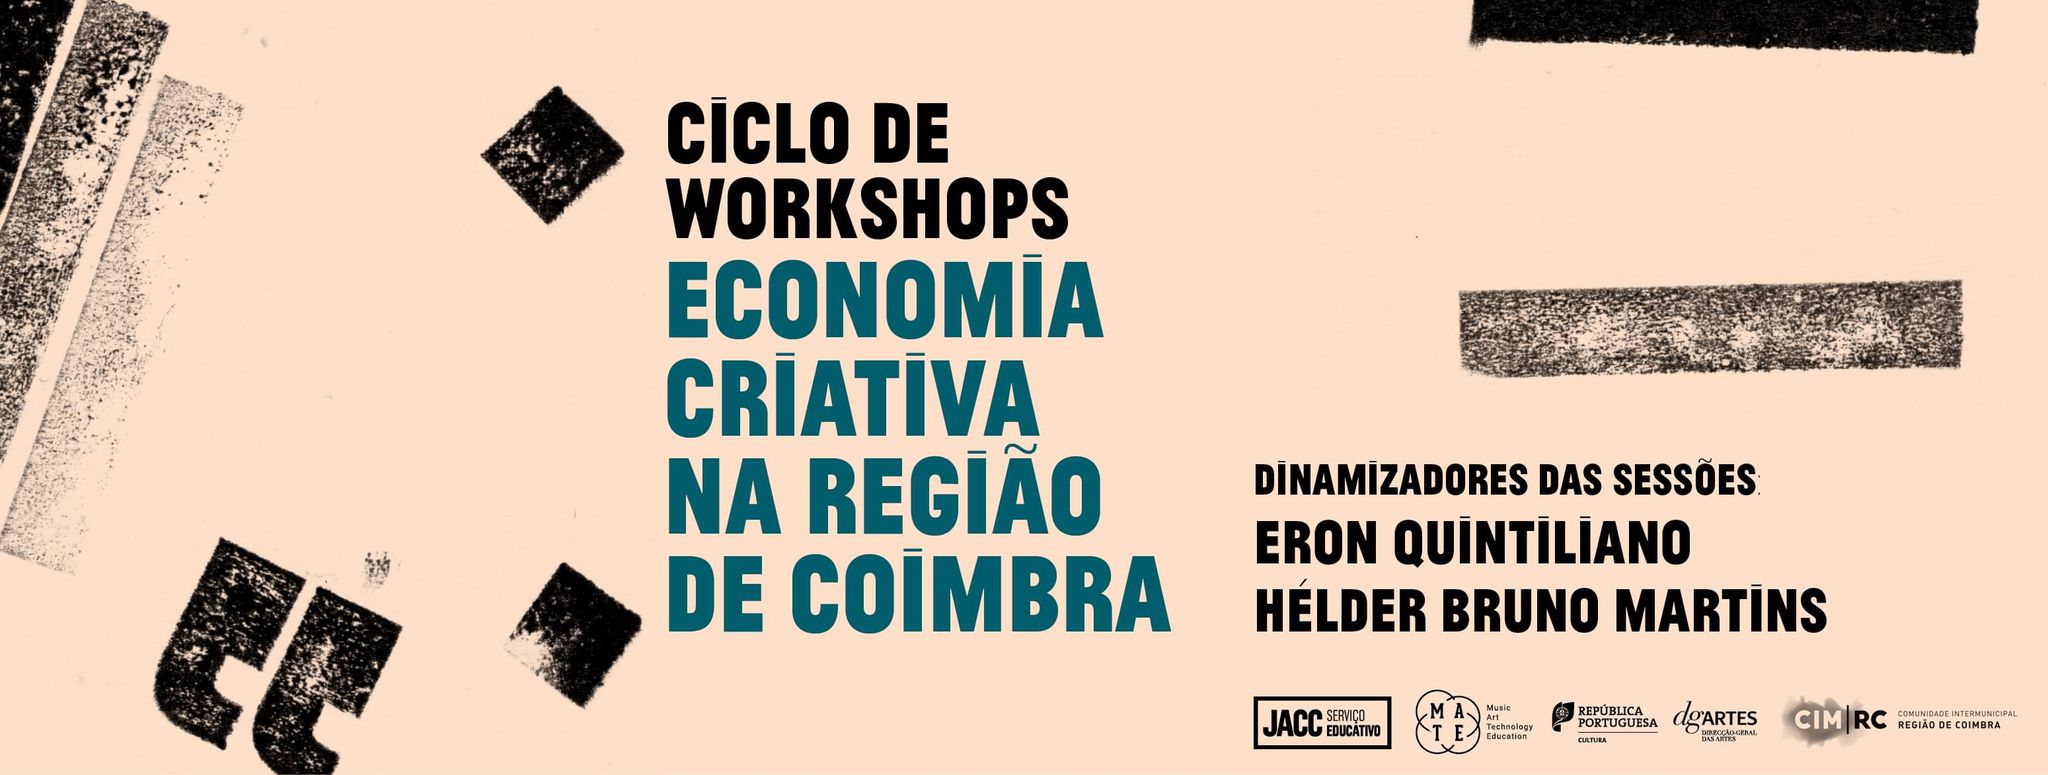 Ciclo de Workshops: Economia Criativa na Região de Coimbra | Sessão #1, em Miranda do Corvo